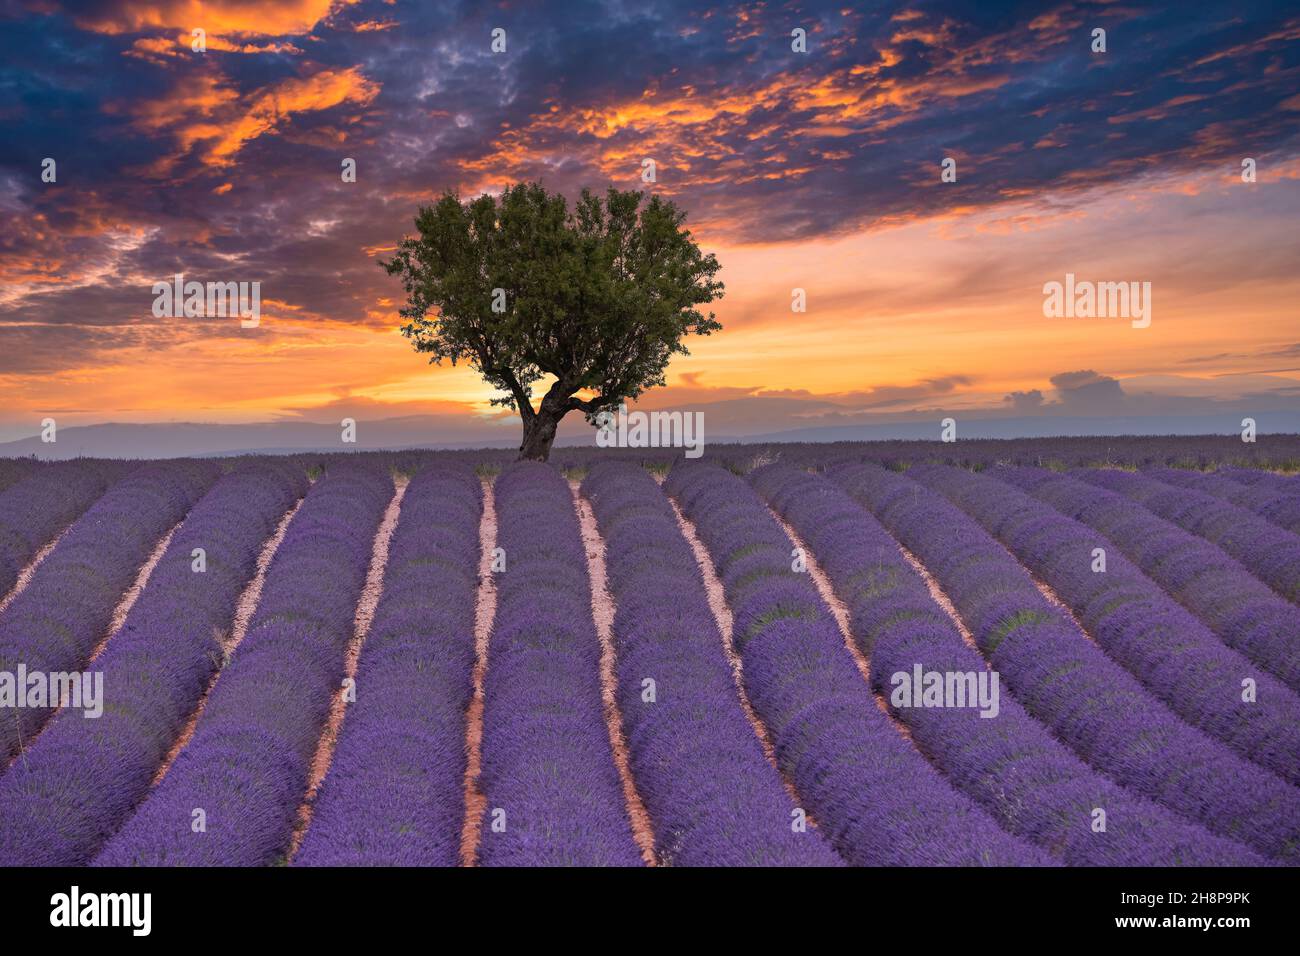 Blumenbäume Landschaft, Wiesenlandschaft. Panoramalandschaft. Inspirierende Lavendel floralen Linien Horizont. Golden Sunset Sky ruhige ruhige ruhige ruhige Entspannung landschaftlich Stockfoto